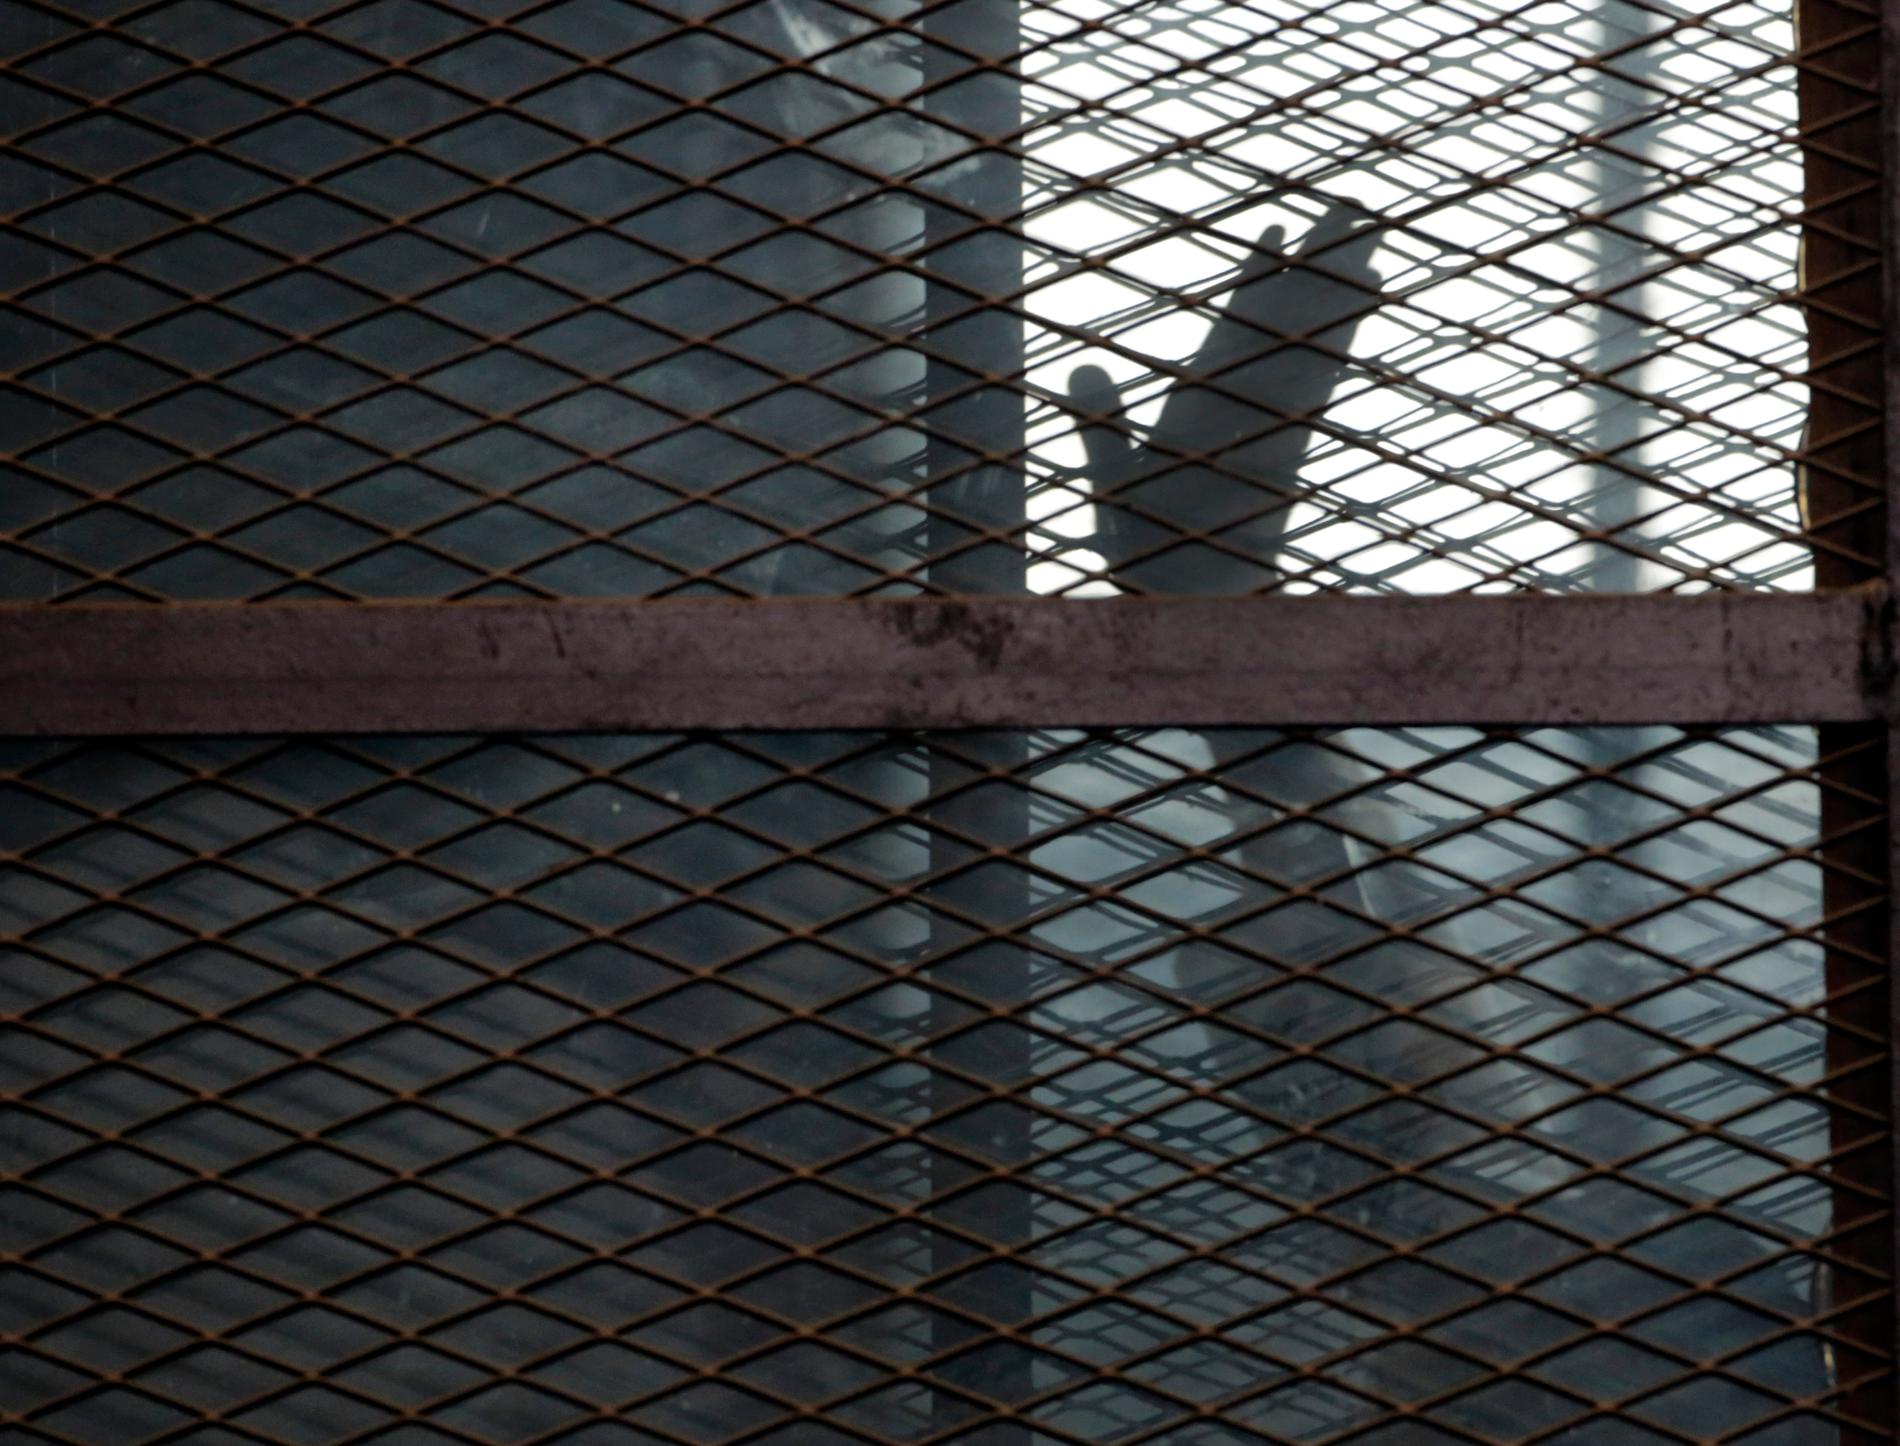 En medlem av Muslimska brödraskapet vinkar från försvarsfållan i en rättegång vid ett fängelse i Kairo. I höstas dömdes en stor grupp fångar till döden för att ha försökt fly från samma fängelse. Arkivbild.